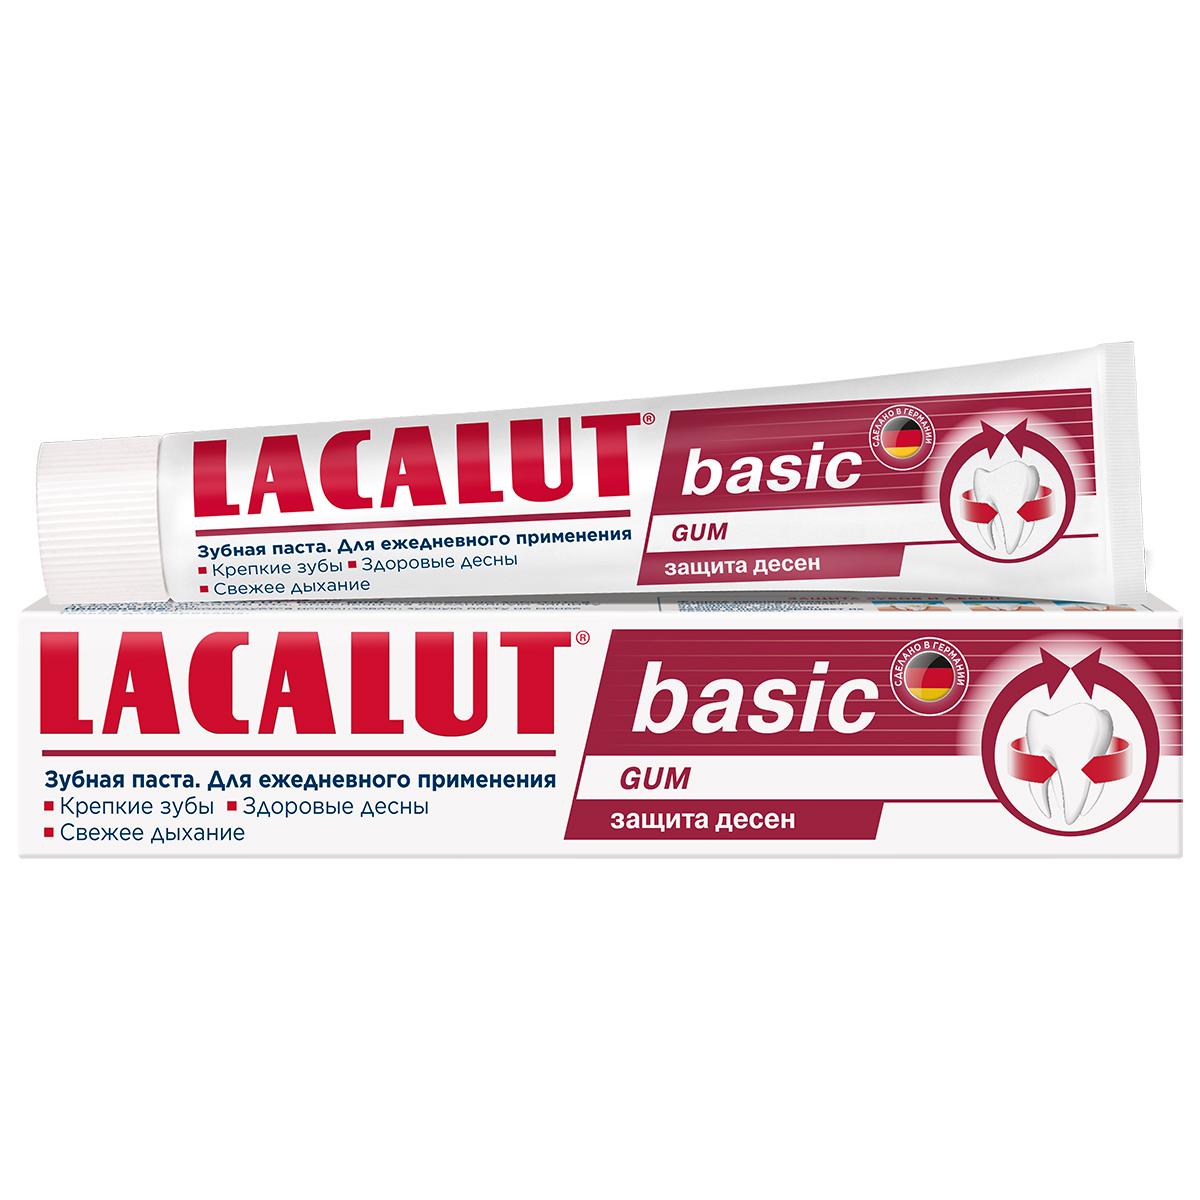 Lacalut Зубная паста Basic Gum для защиты десен, 75 мл (Lacalut, Зубные пасты)